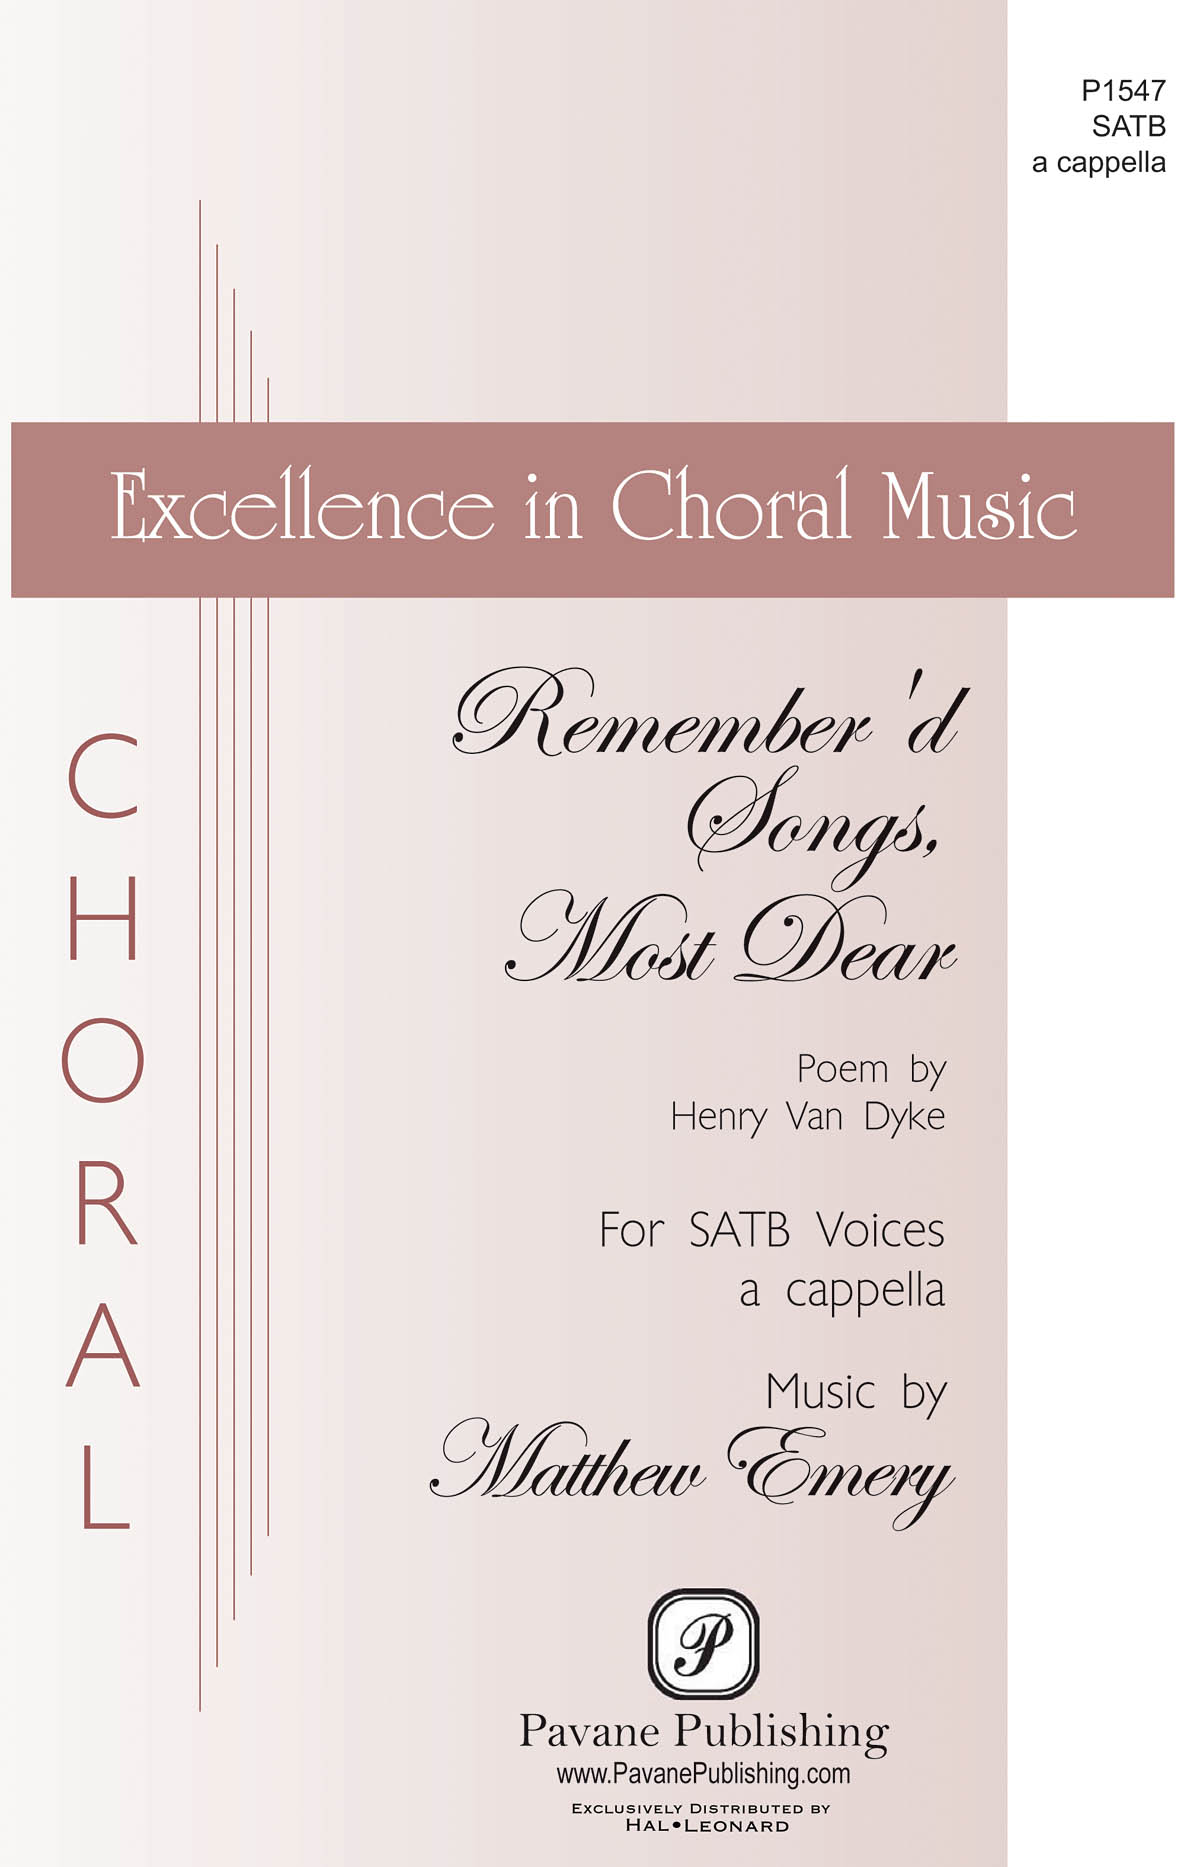 Matthew Emery: Remember'd Songs Most Dear: Mixed Choir a Cappella: Vocal Score